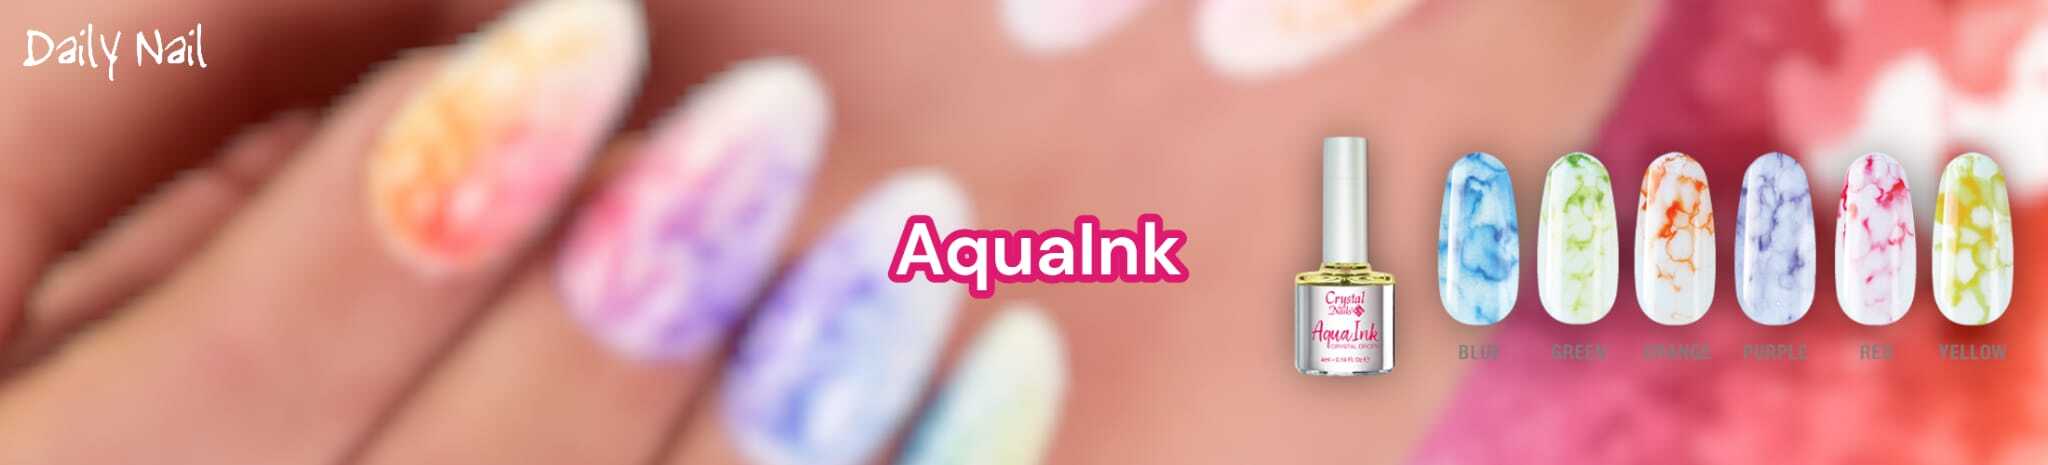 AquaInk